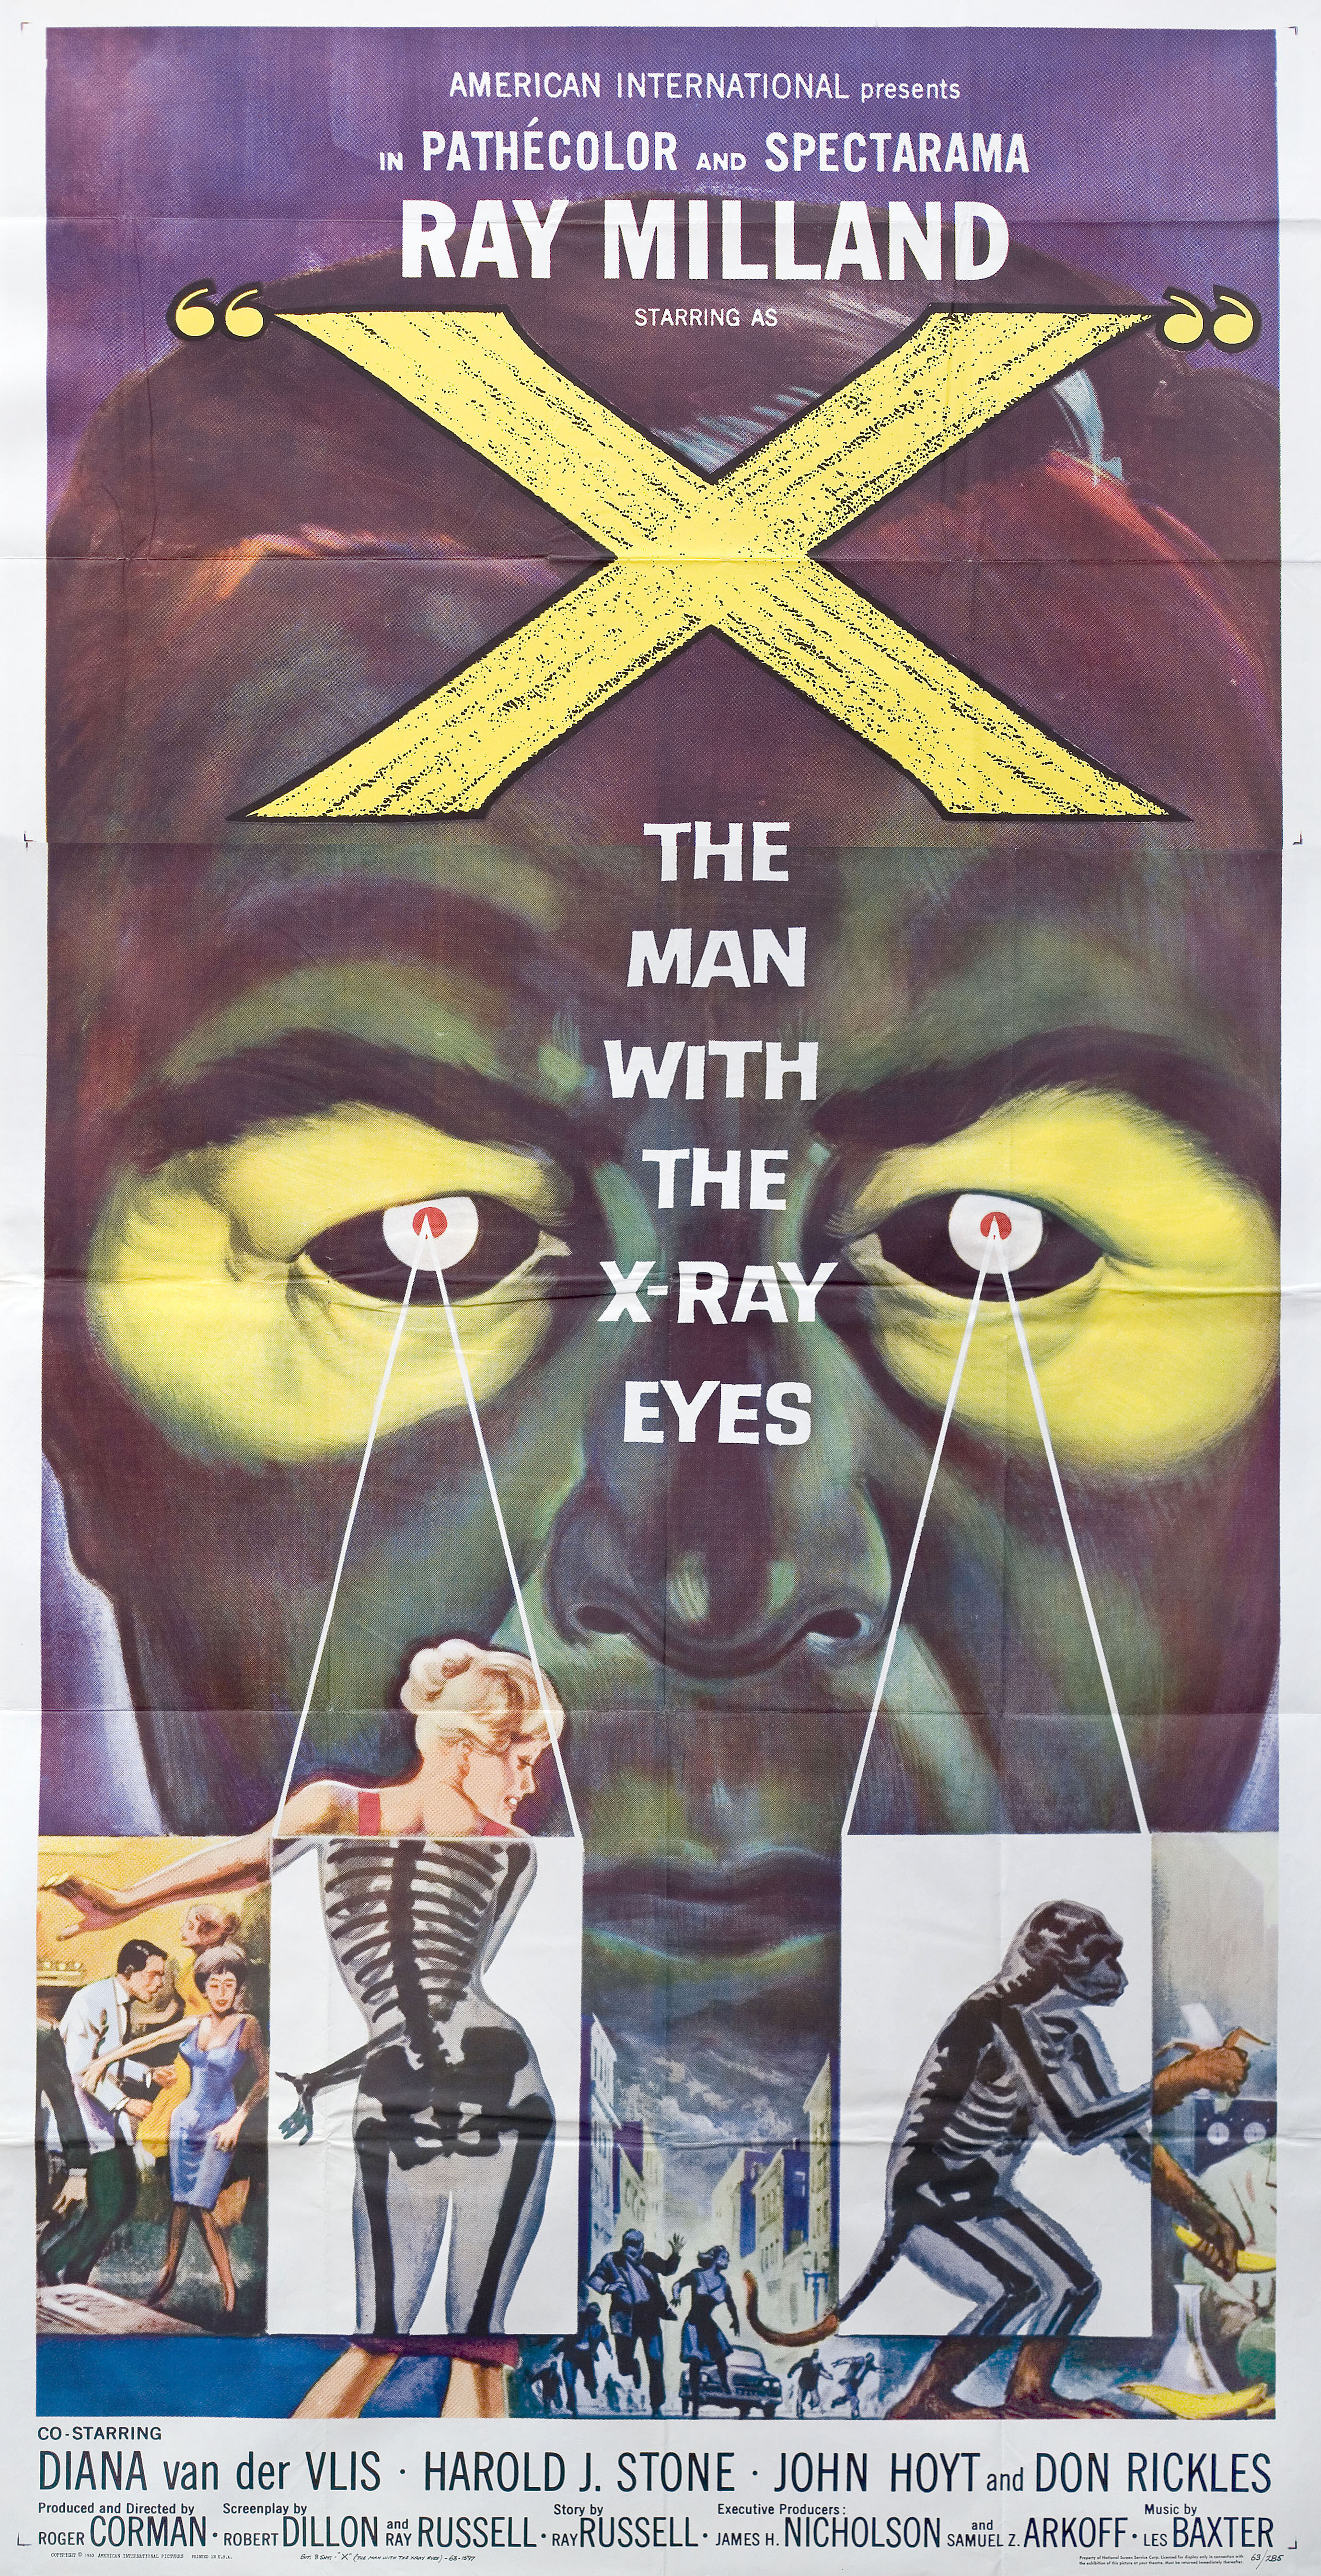 Человек с рентгеновскими глазами (X The Man with the X-Ray Eyes, 1963), режиссёр Роджер Корман, американский постер к фильму, автор Рейнольд Браун (1963 год)